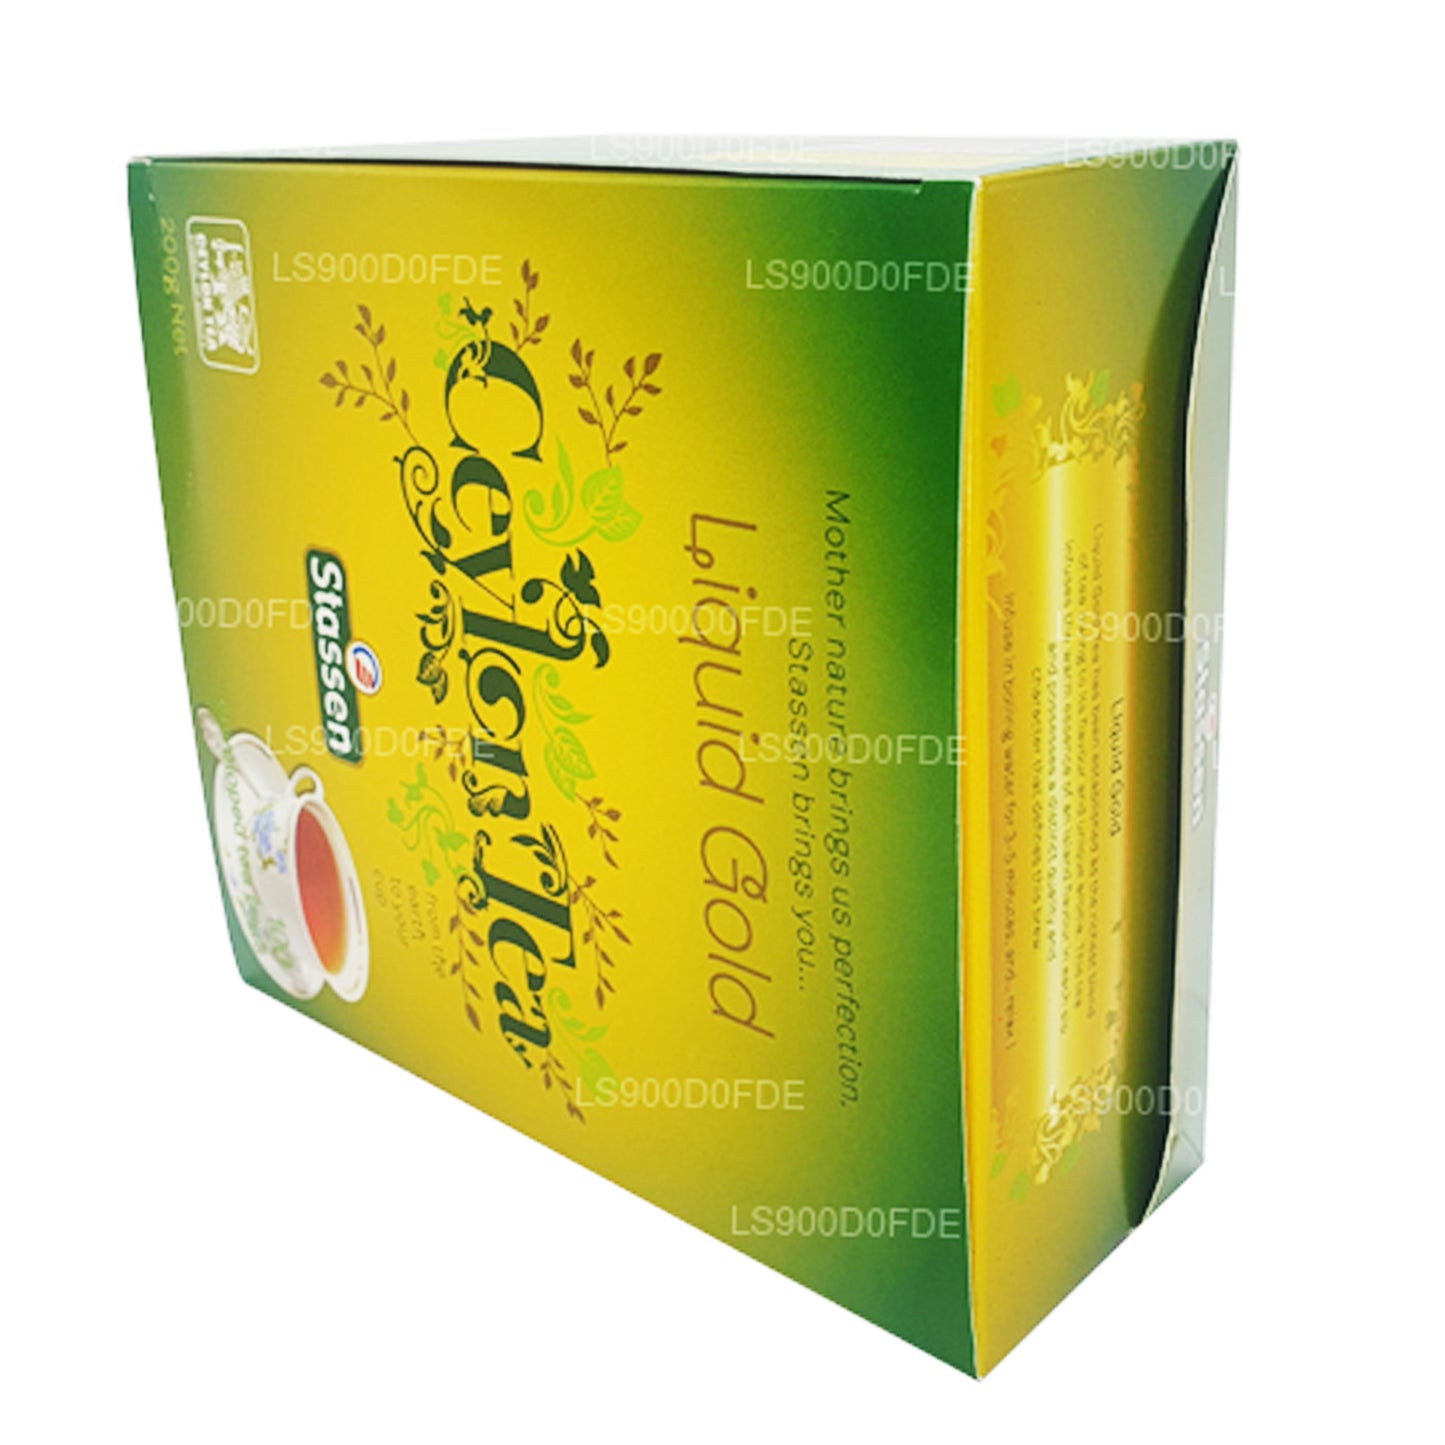 Stassen Liquid Gold Tea (200g) 100 teekotid